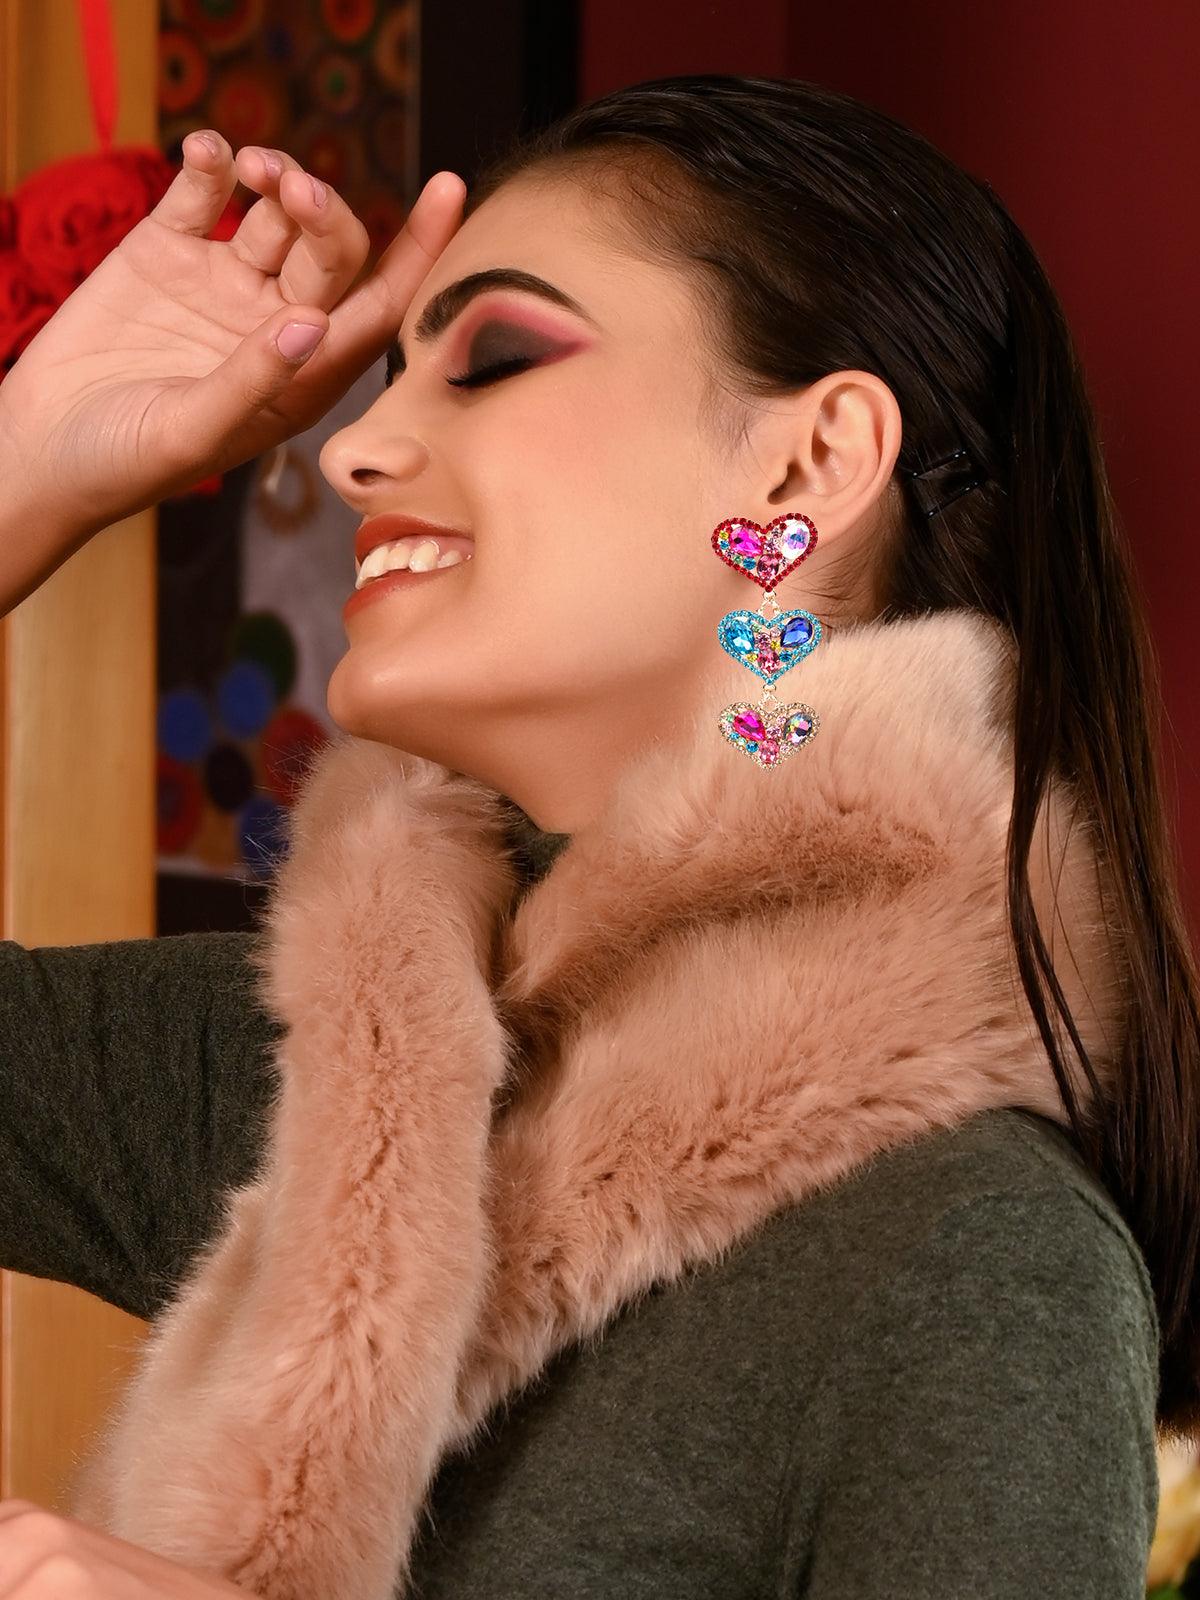 Women's Vibrant Gorgeous Multicoloured Heart-Shaped Earrings - Odette